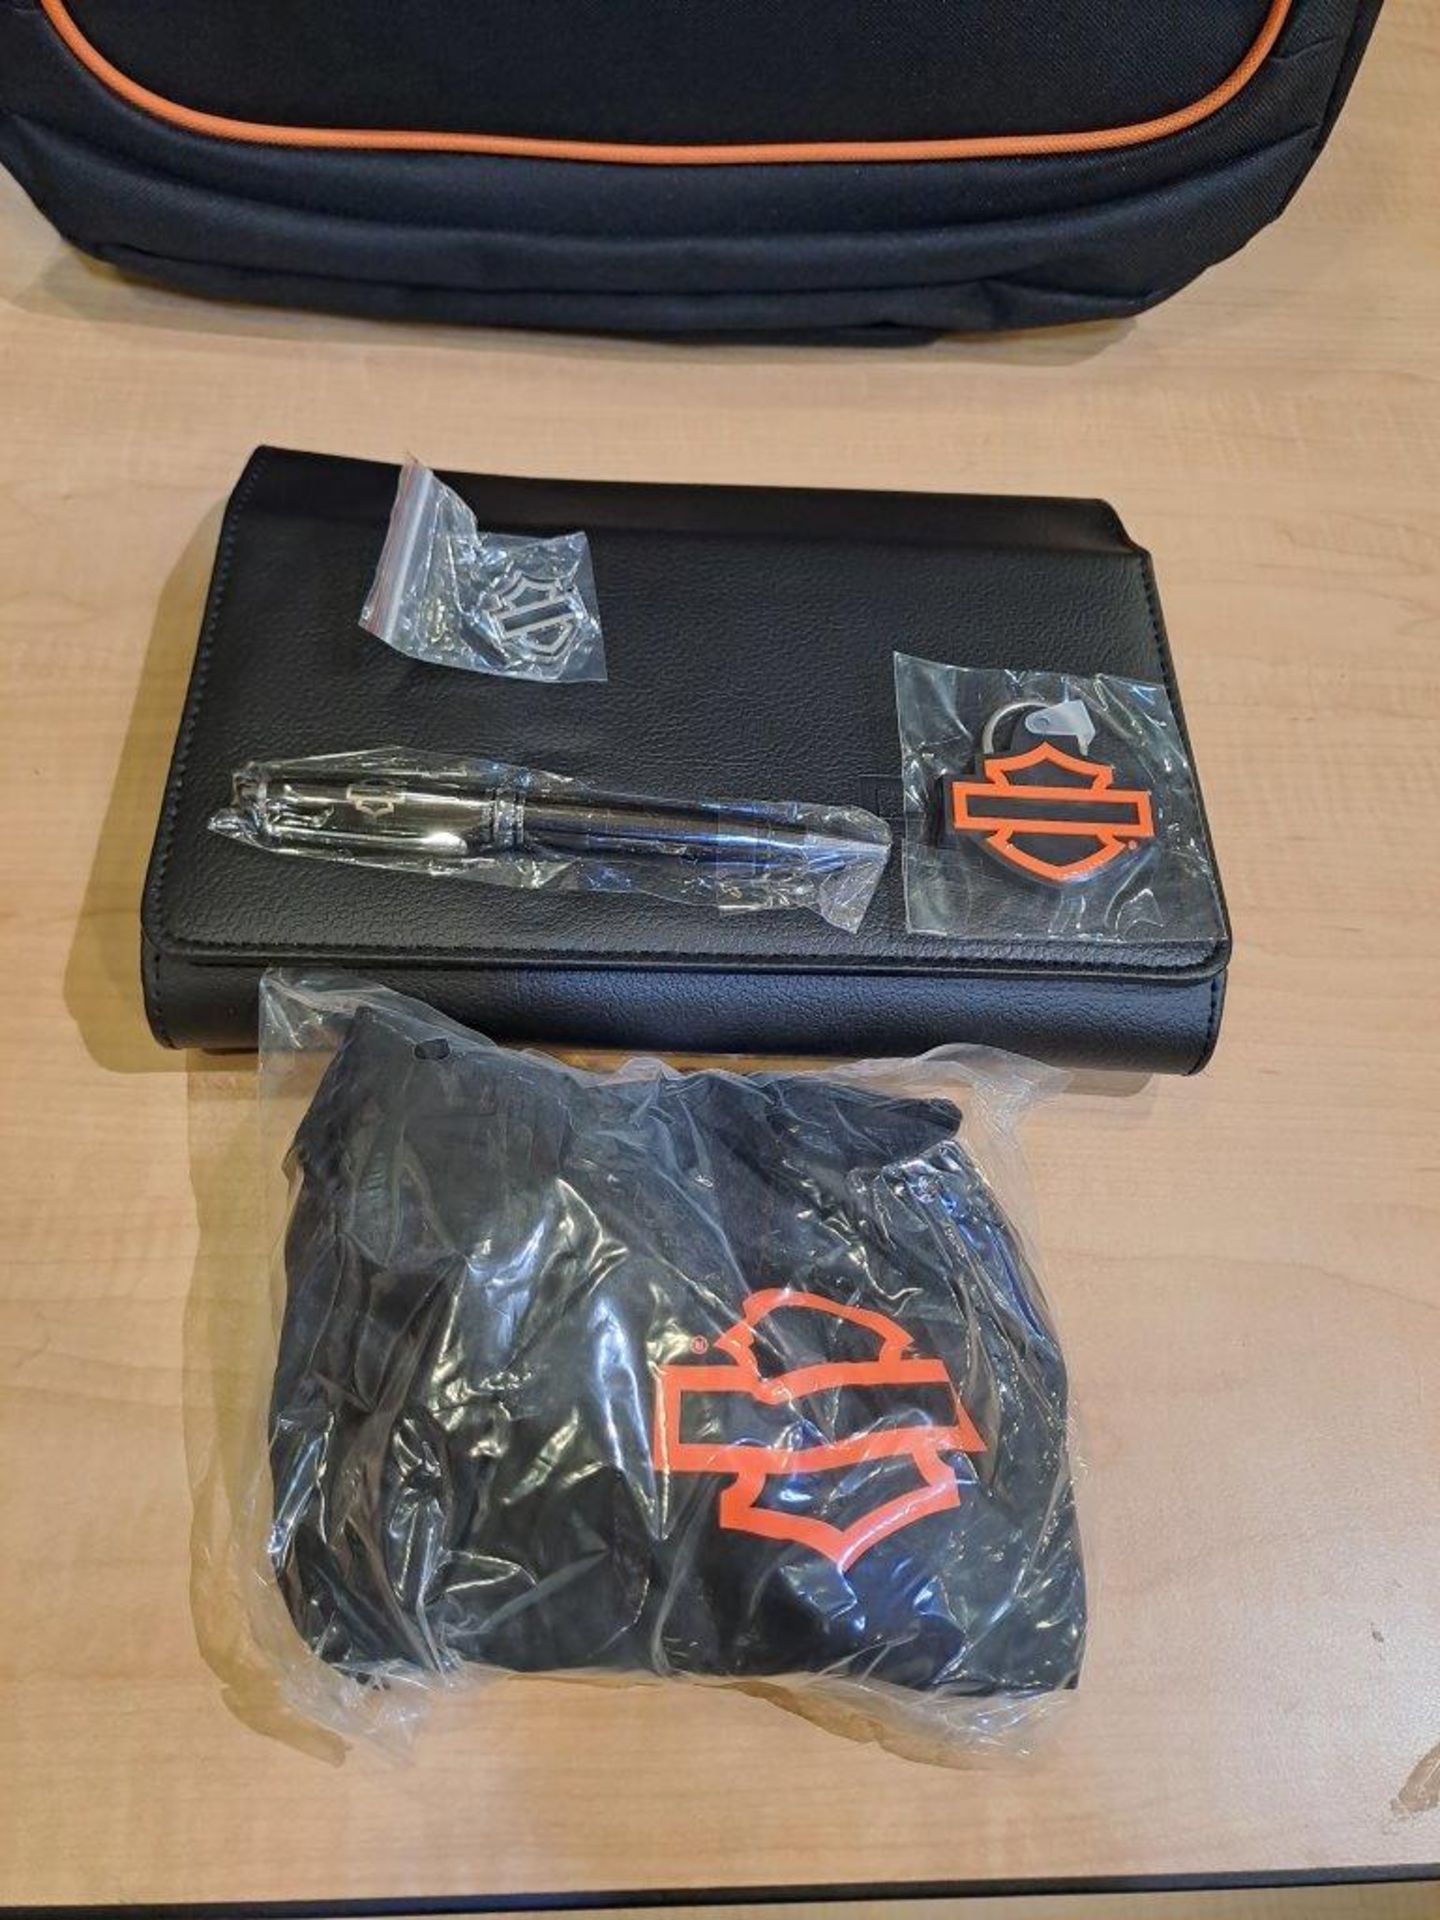 4 x boxes of 10 - Harley Davidson rucksacks (40 total) - Image 2 of 7